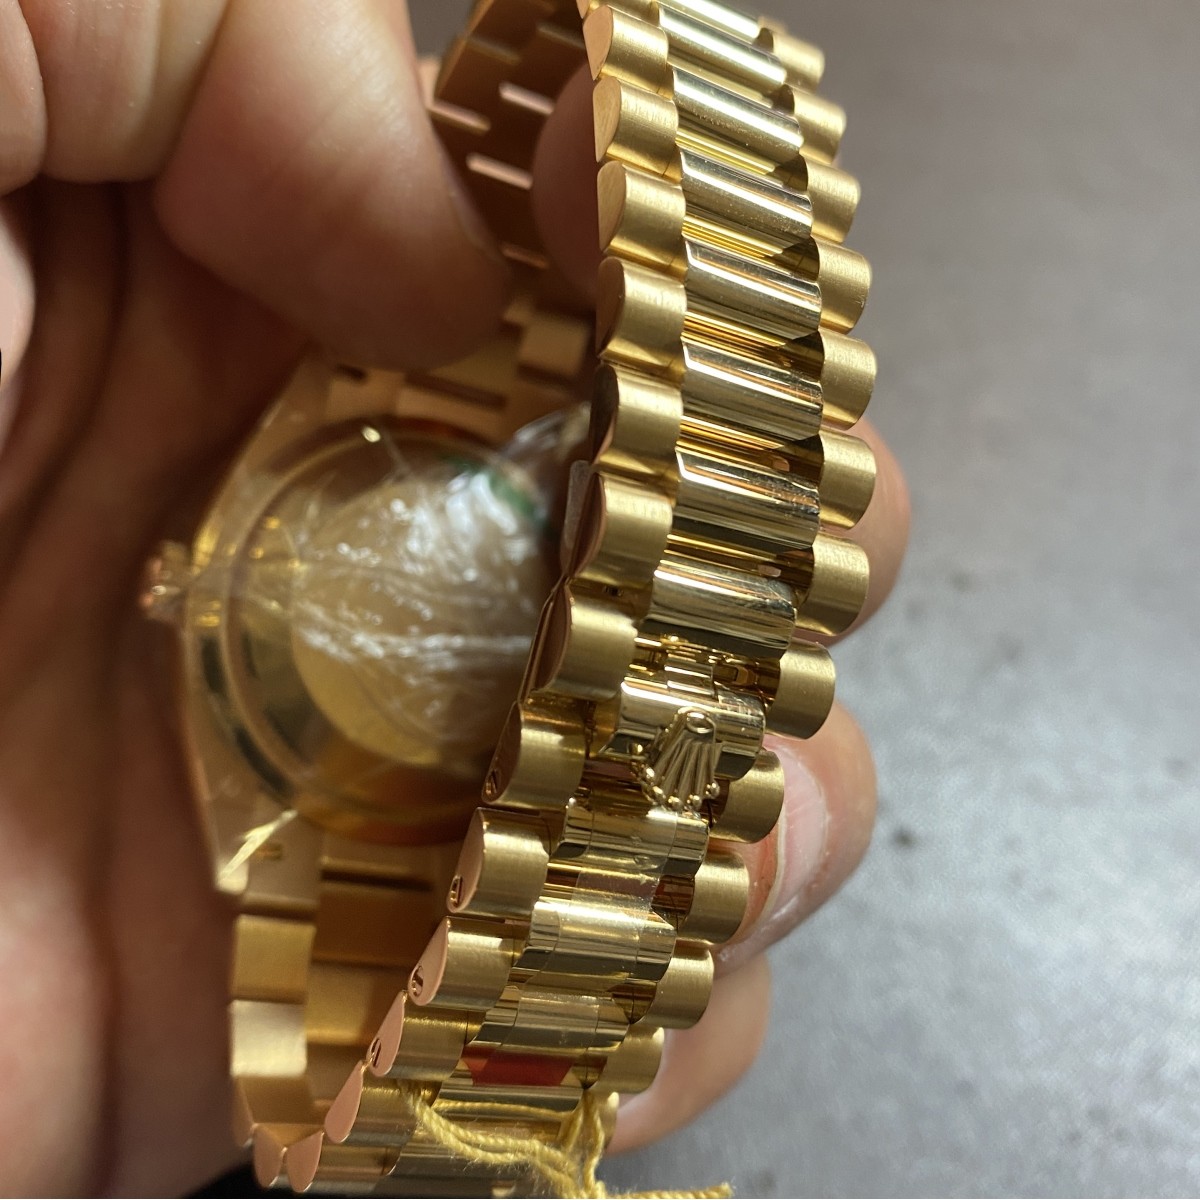 Rolex Day-Date 18K Watch